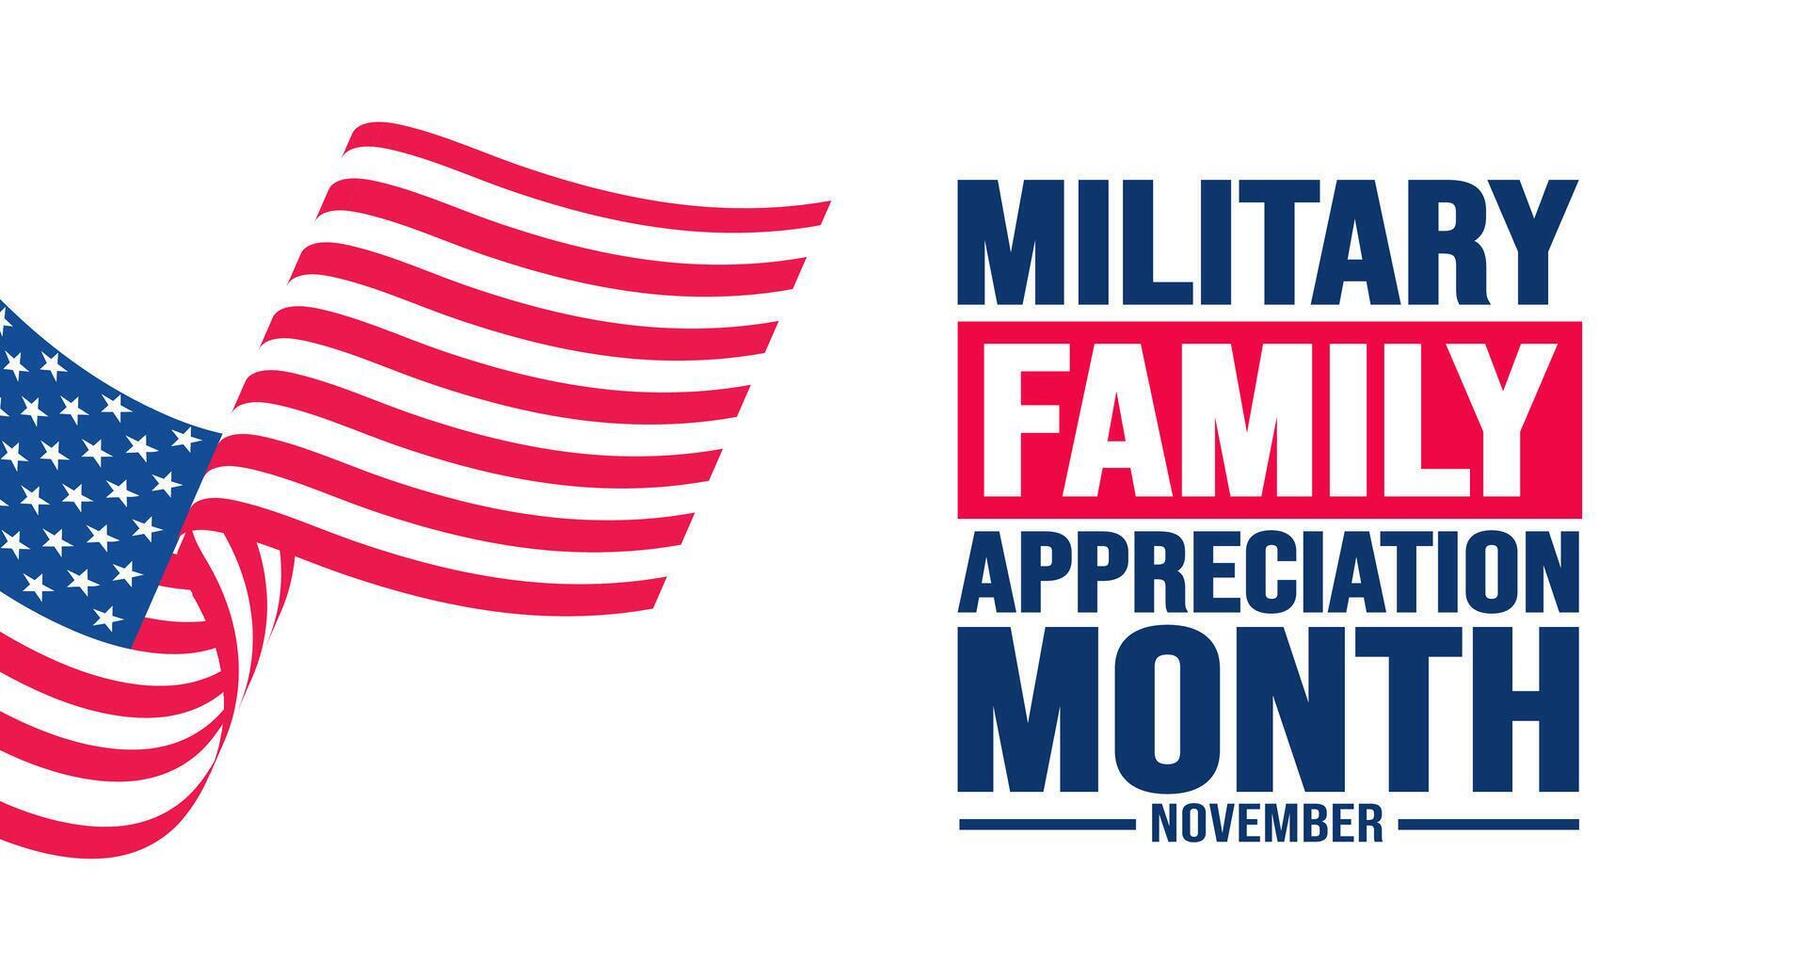 noviembre es militar familia apreciación mes o mes de el militar familia antecedentes modelo. fondo, bandera, cartel, tarjeta, y póster diseño modelo con texto inscripción. vector